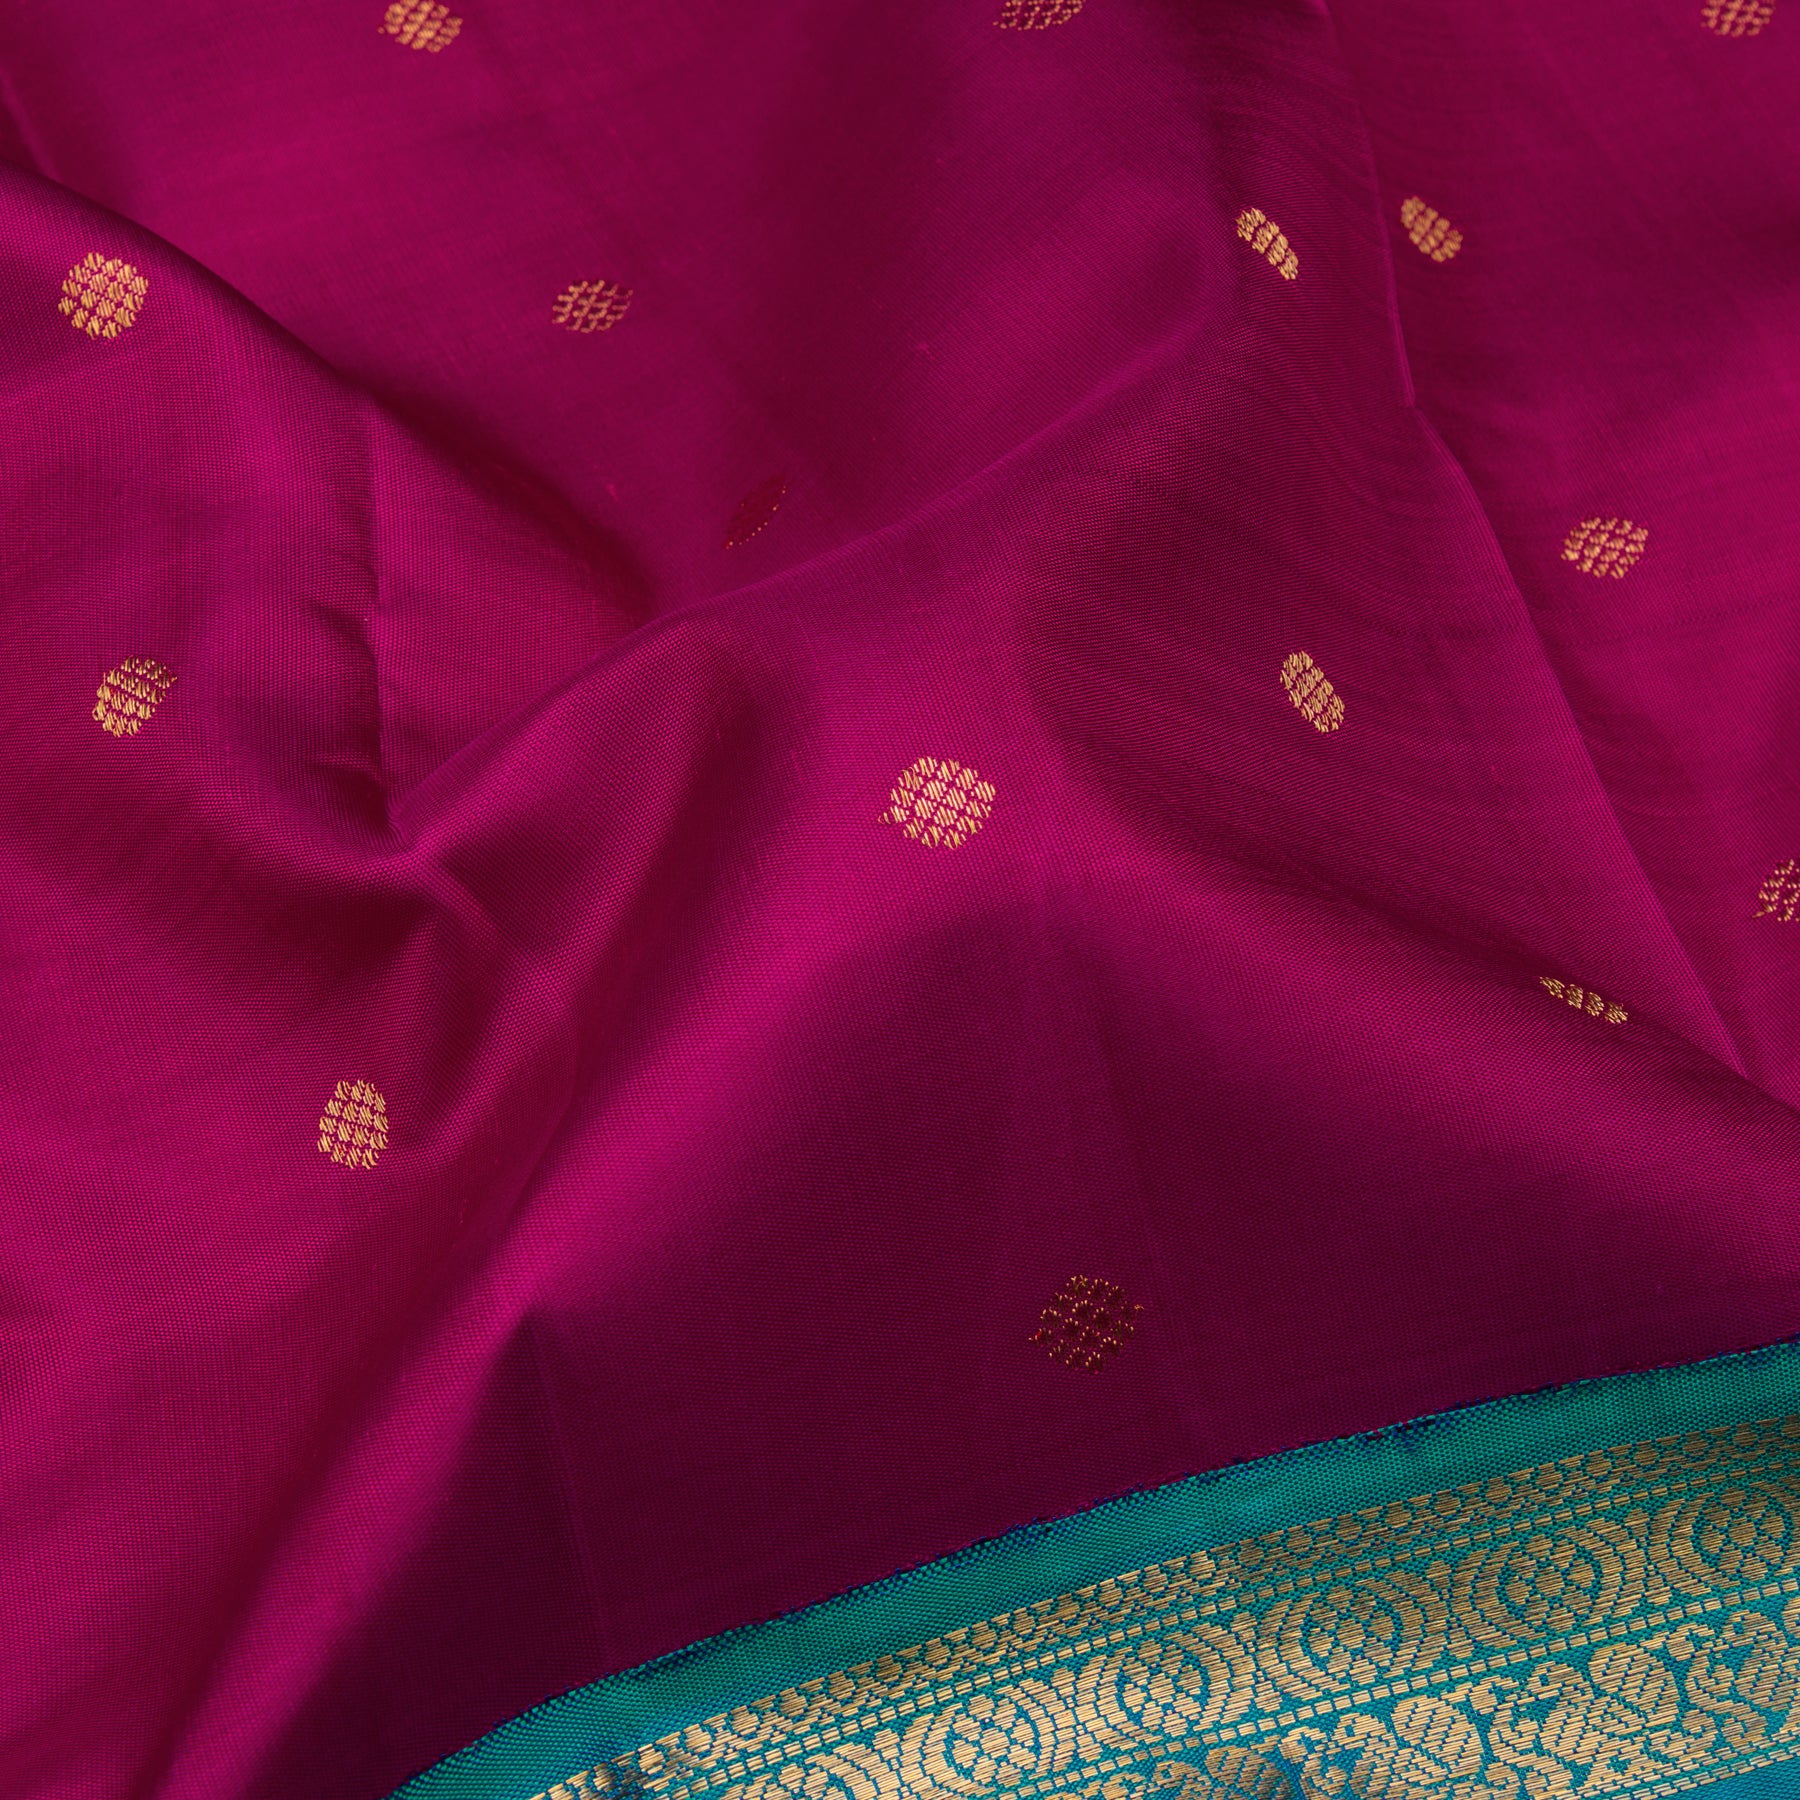 Kanakavalli Kanjivaram Silk Sari 22-595-HS001-10929 - Fabric View